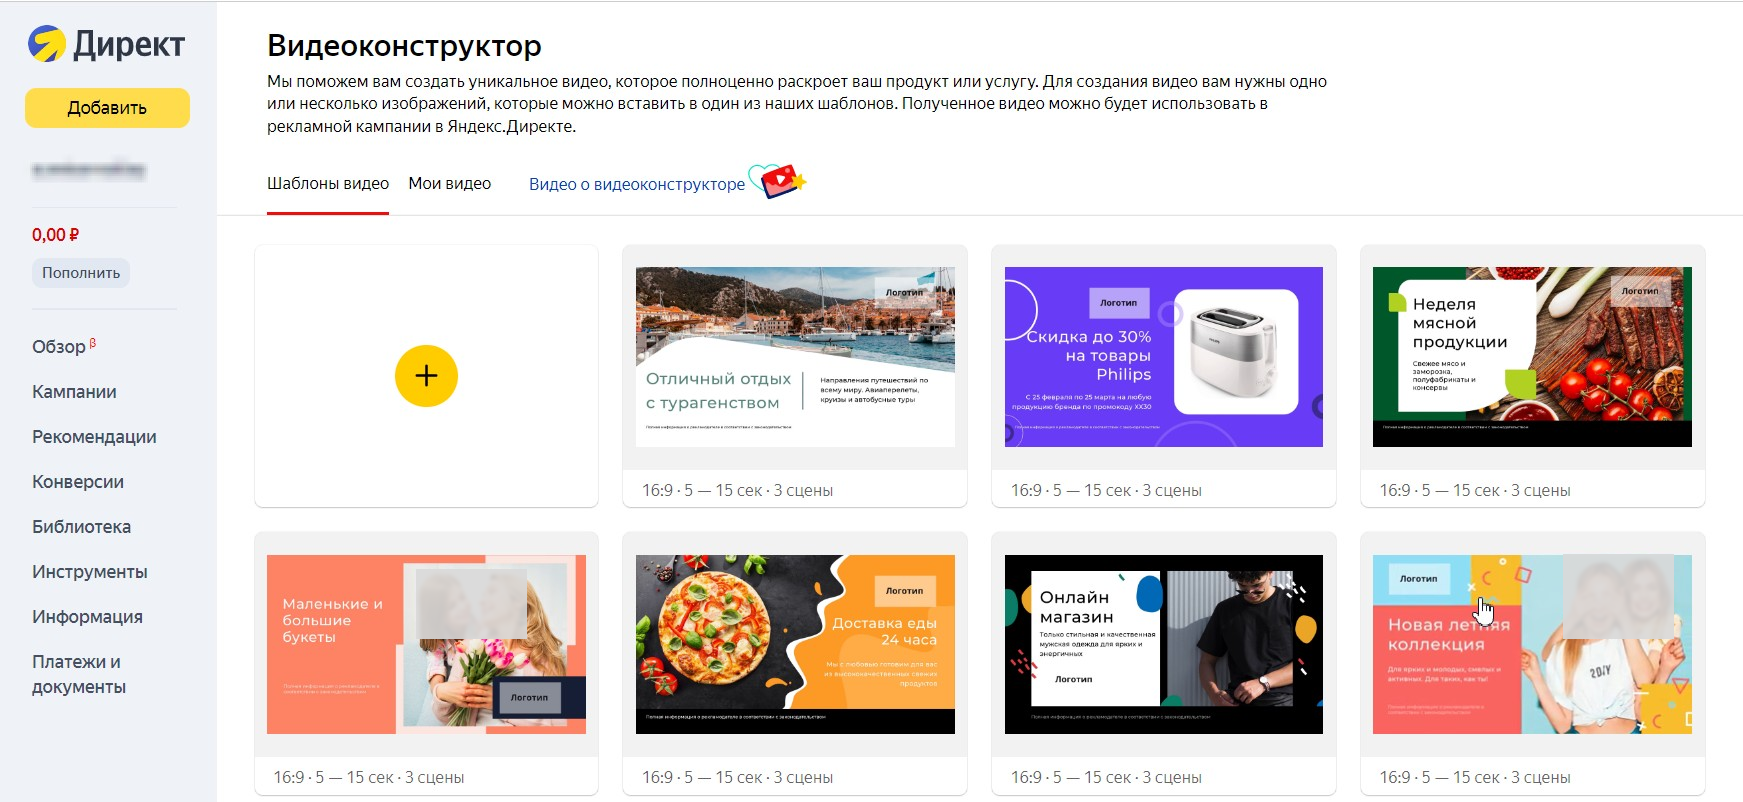 Создать свое рекламное видео можно в видеоконструкторе Яндекса